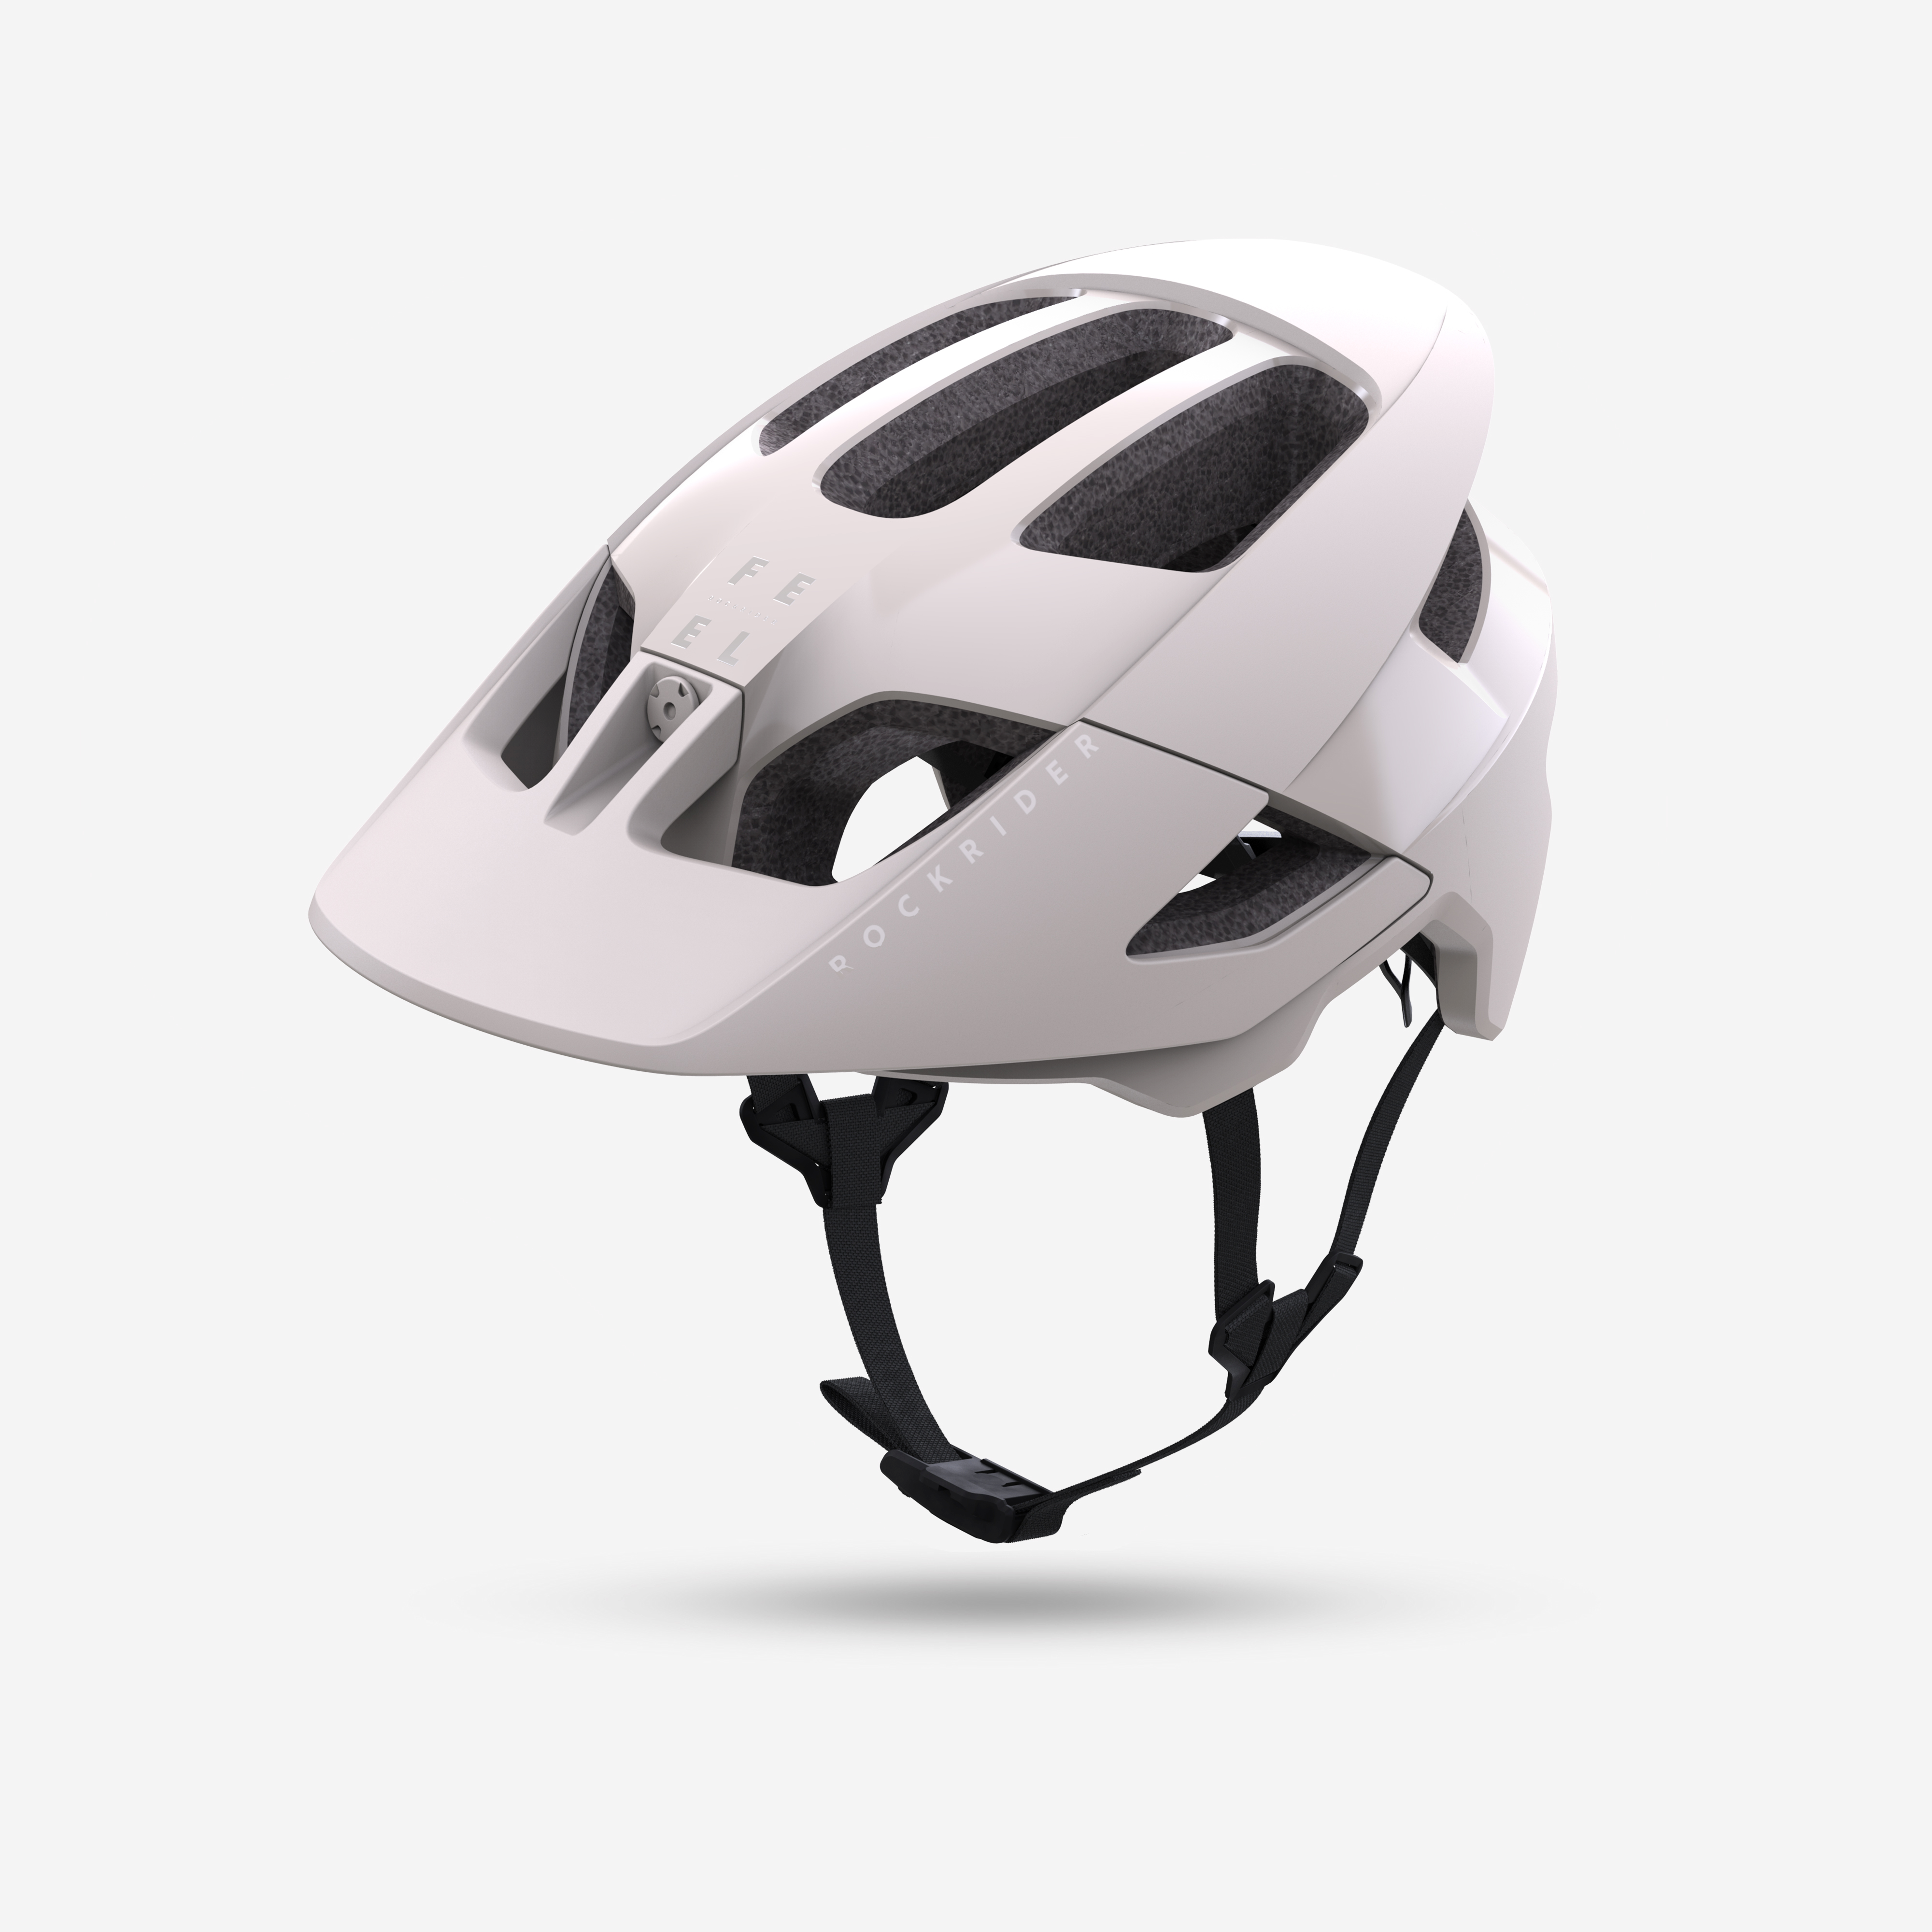 ② Housse de transport/protection pour casque cycliste